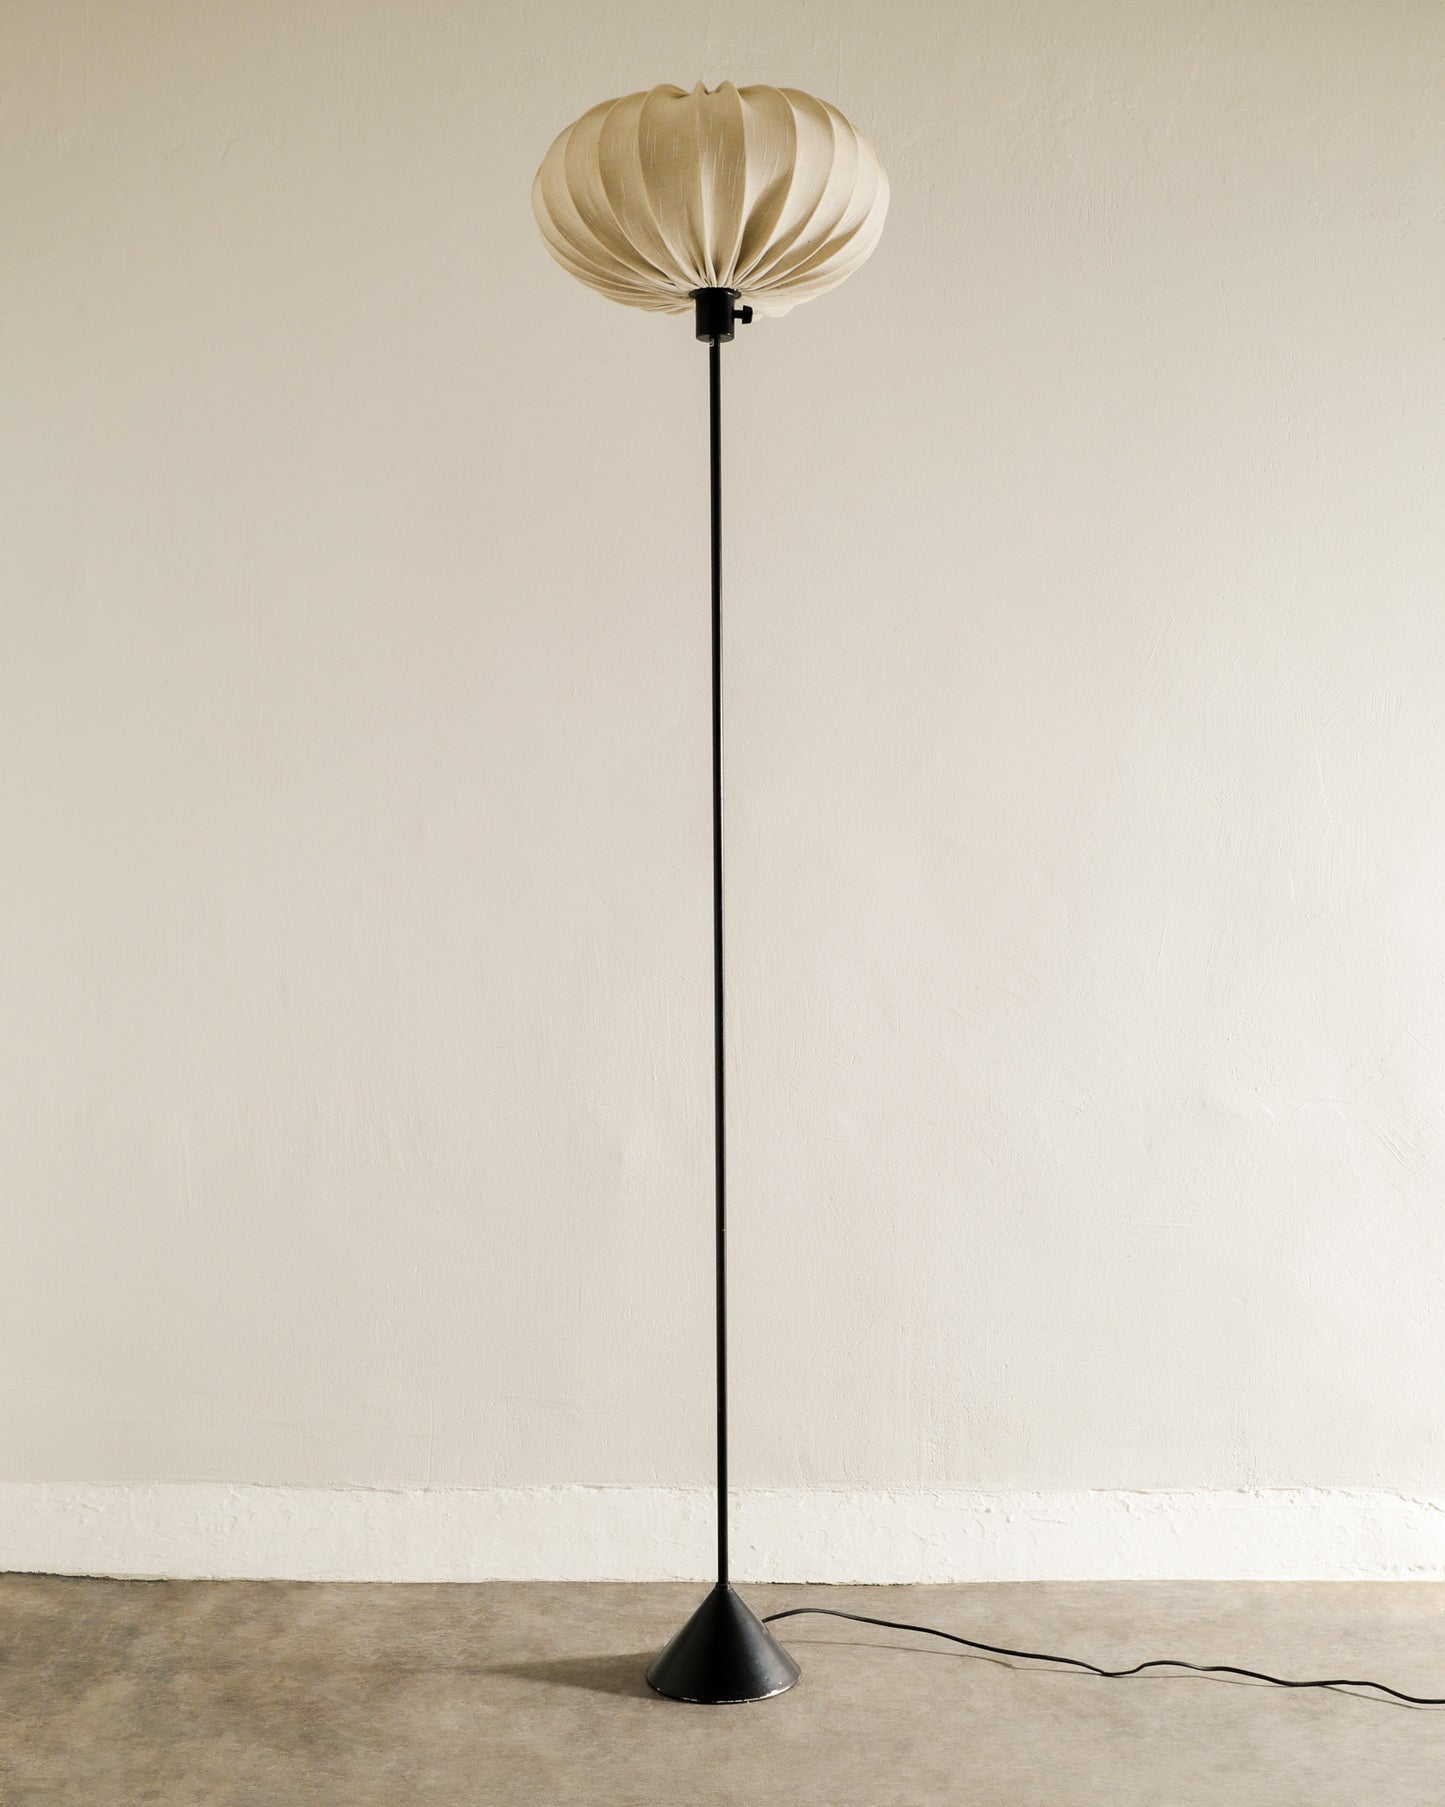 HANS-AGNE JAKOBSSON "G-23" FLOOR LAMP, 1950s